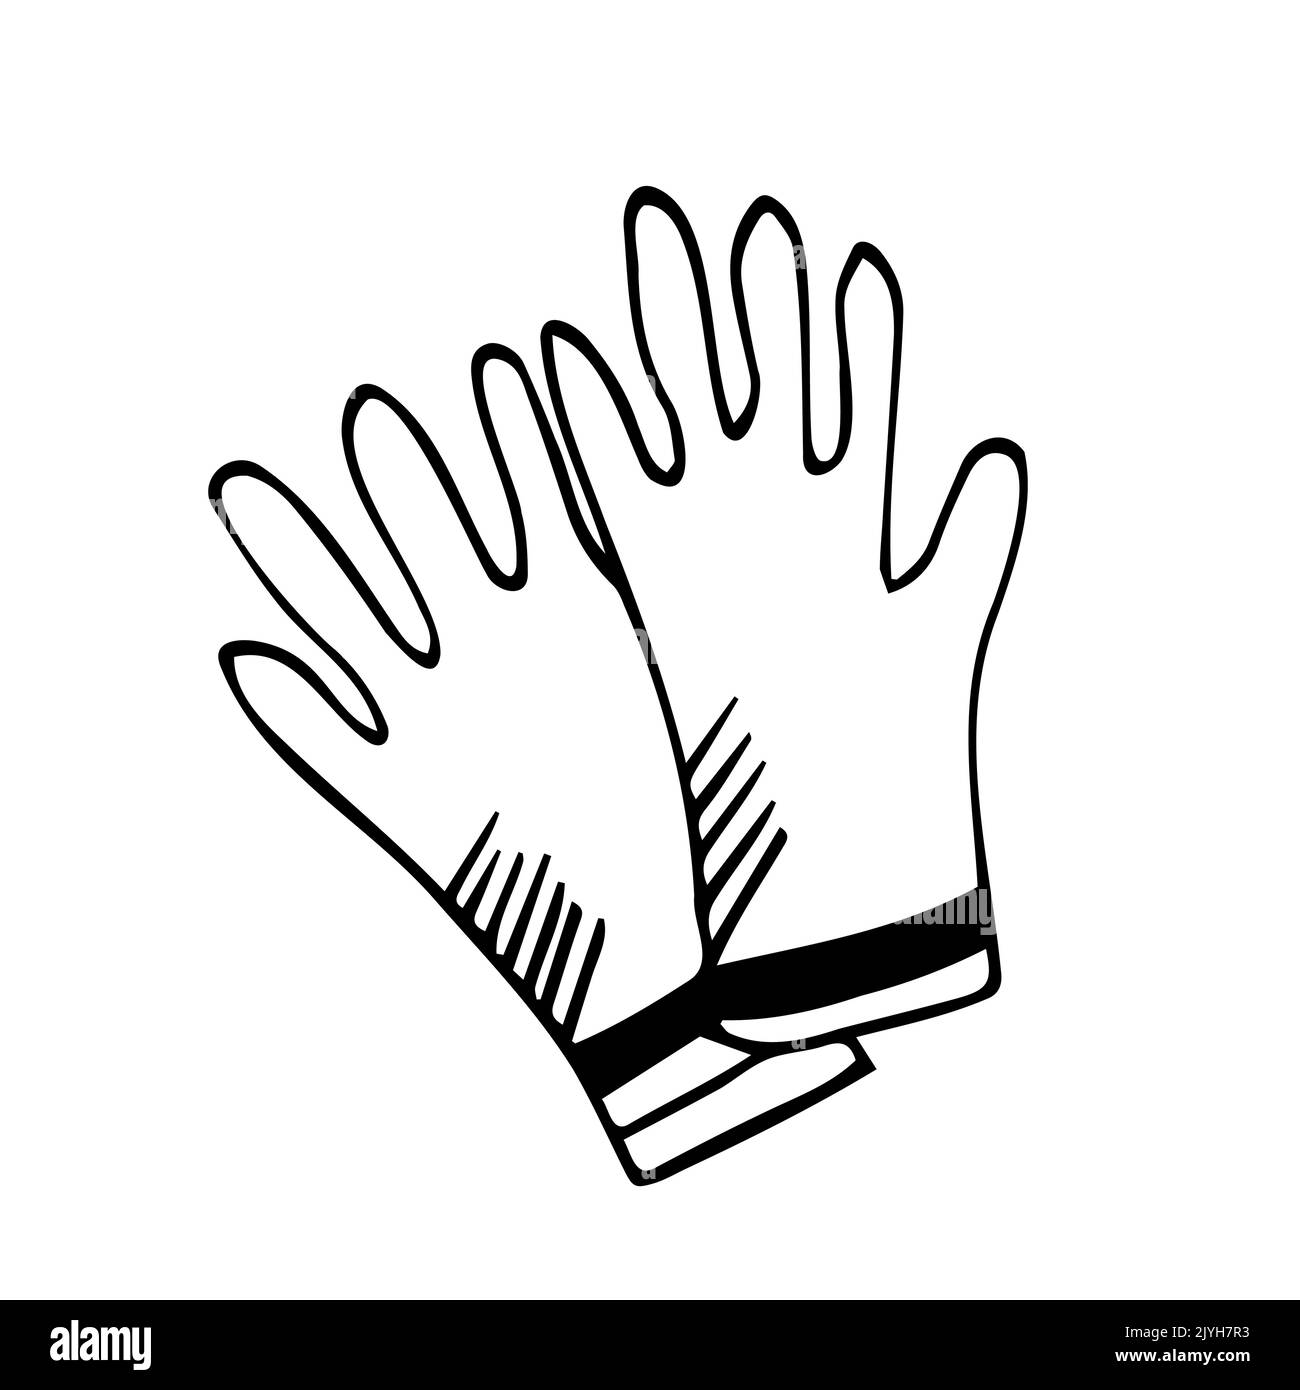 Guantes de goma - vector póster simple con letras y dibujo dibujado a mano en doodle. Herramienta para proteger las manos de virus, suciedad, productos químicos, para Ilustración del Vector